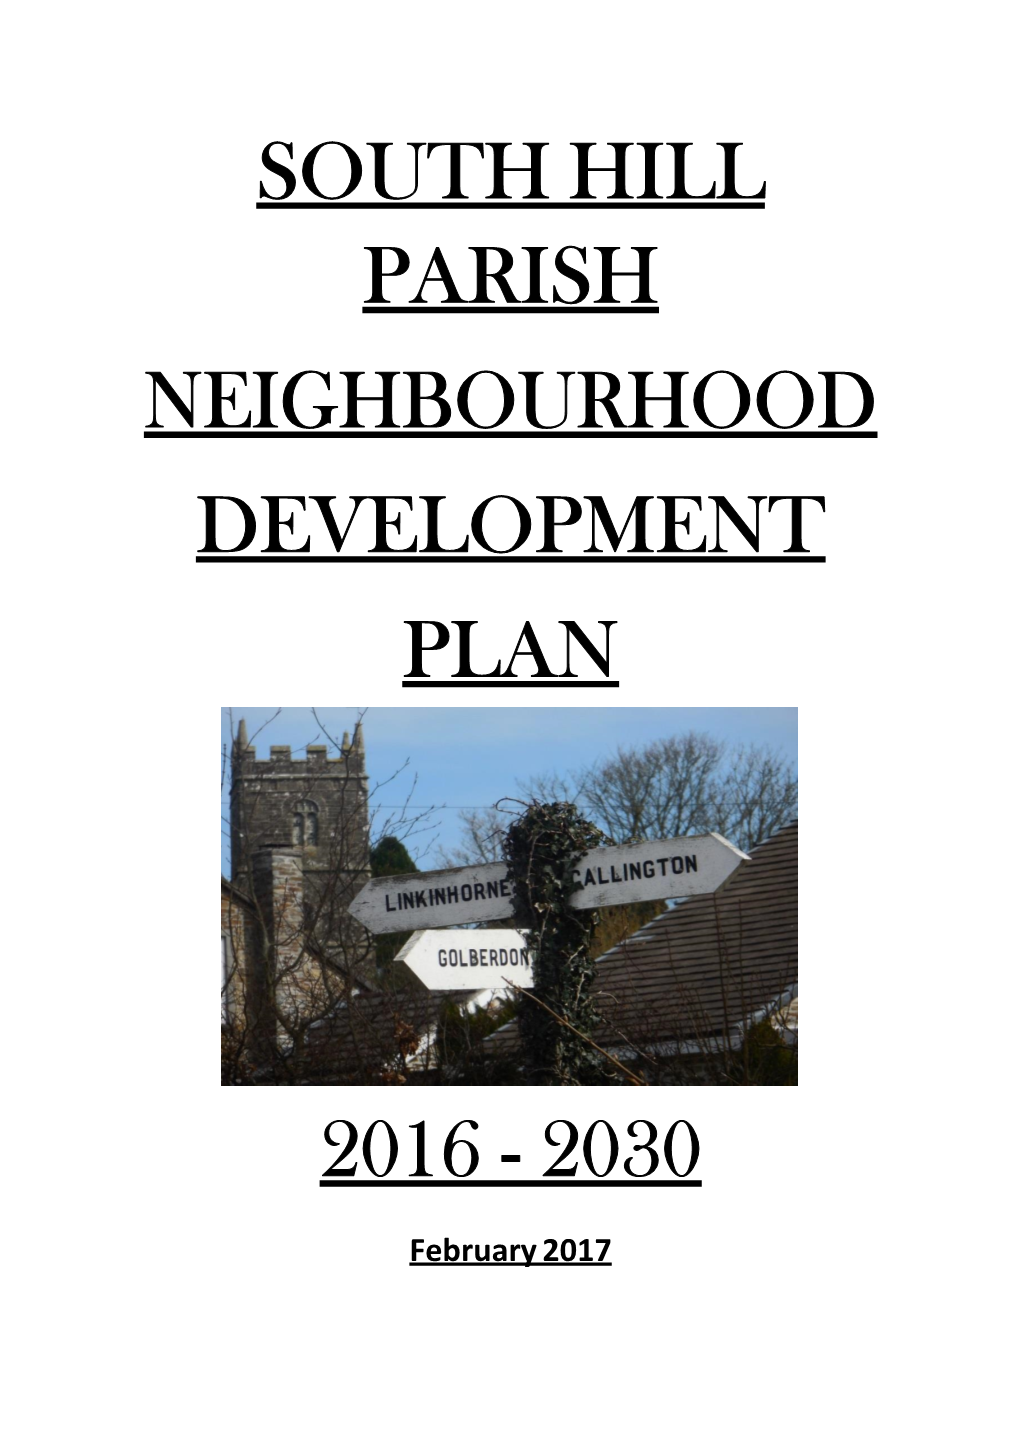 South Hill Neighbourhood Development Plan